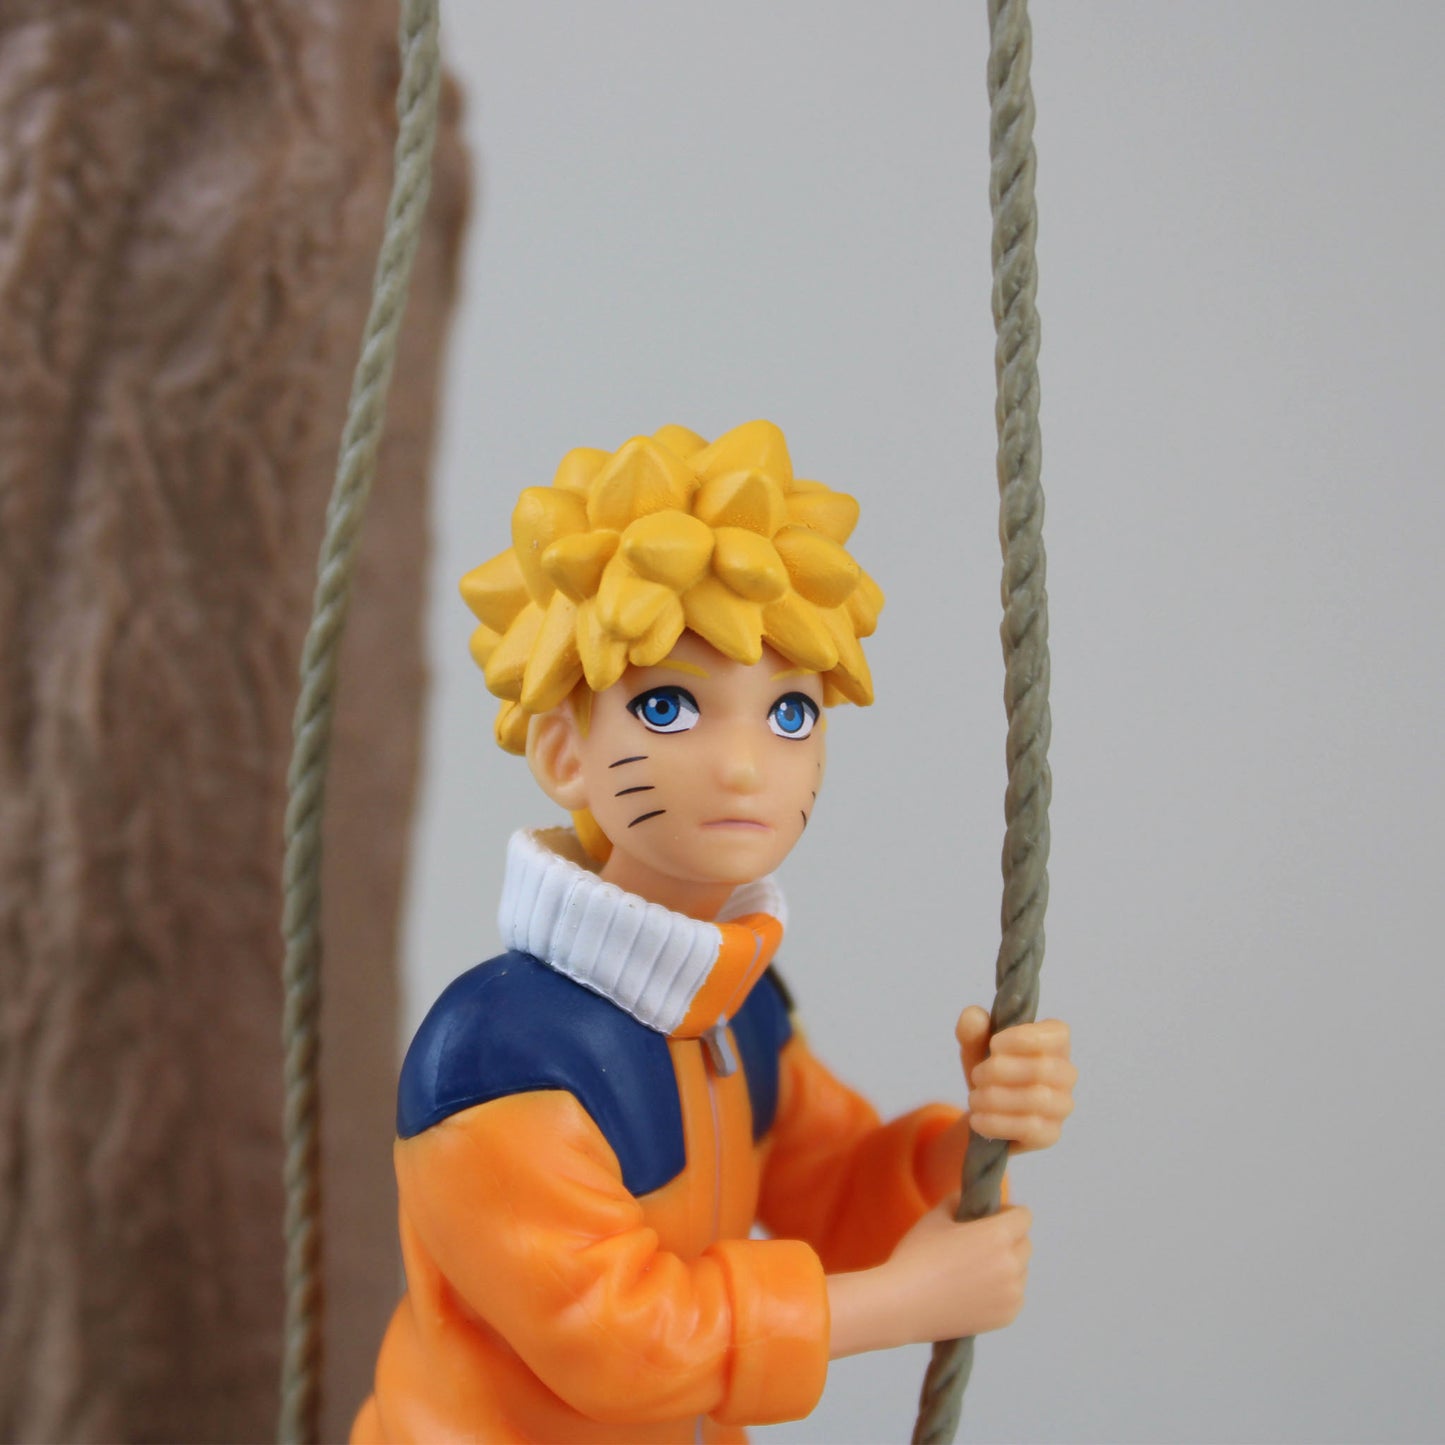 Naruto Shippuden - Figurine Naruto Uzumaki Effectreme